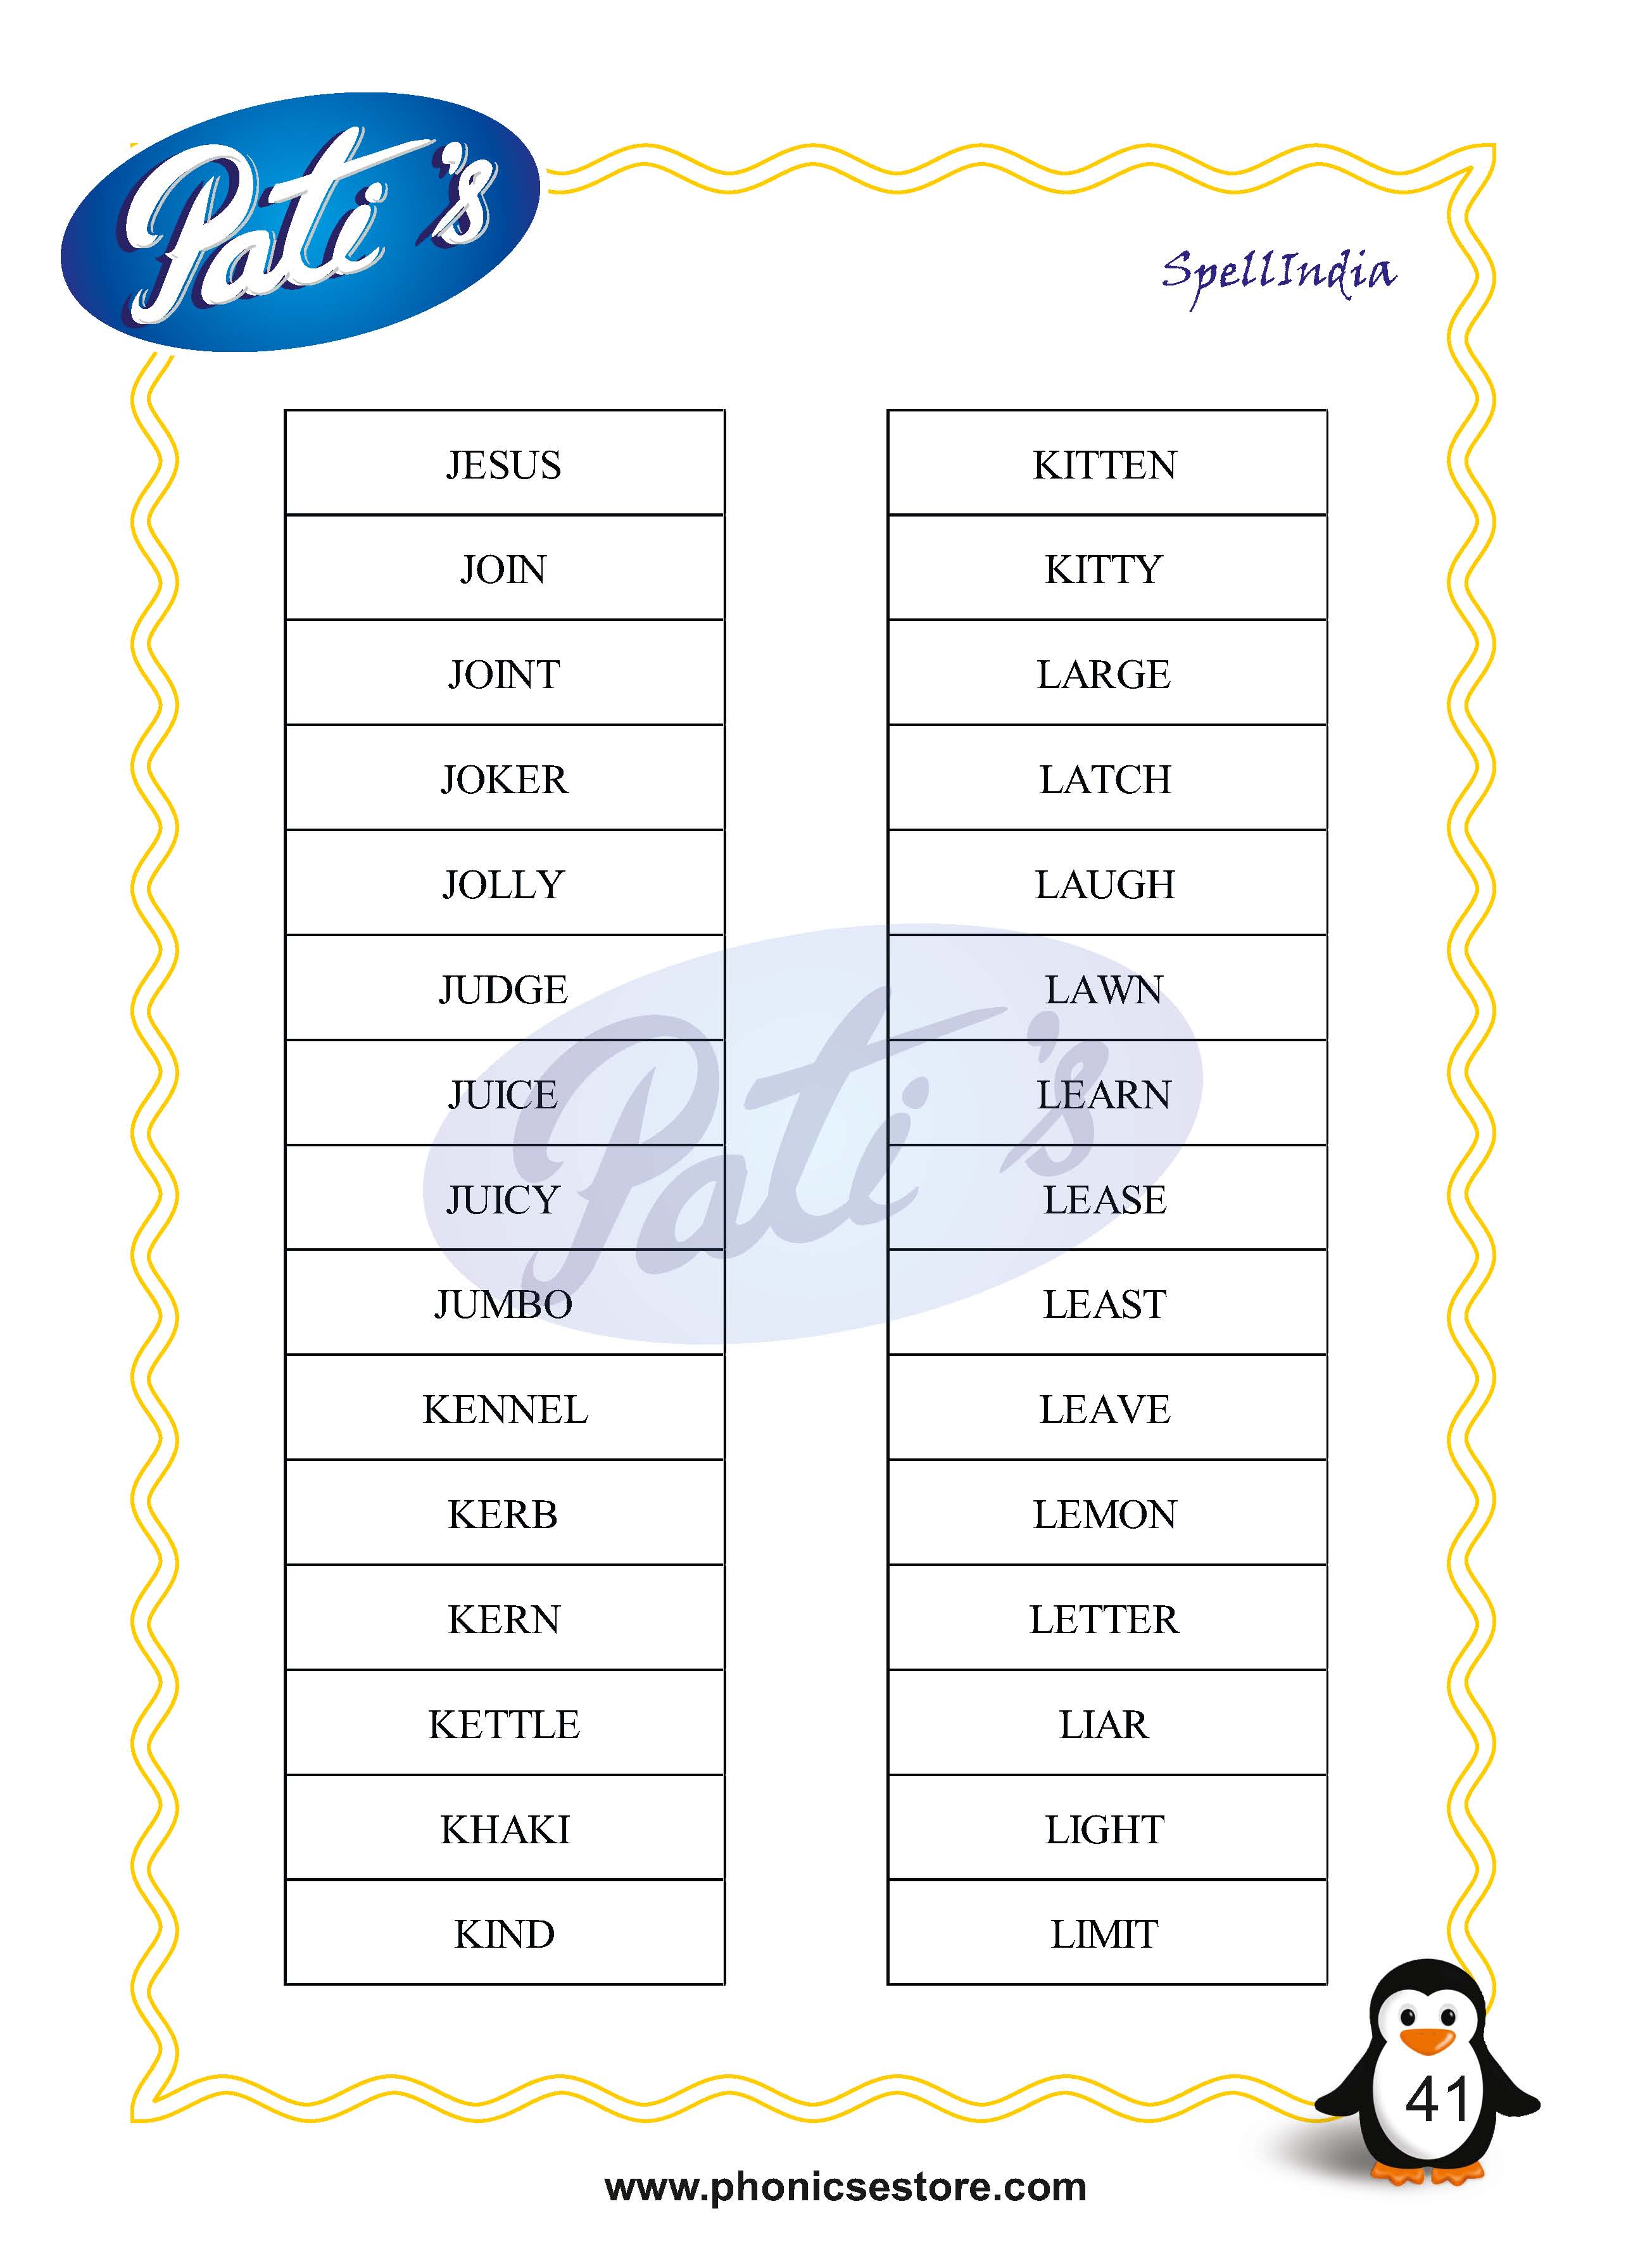 Pati Spelling Bee word list Class 2 Grade 2